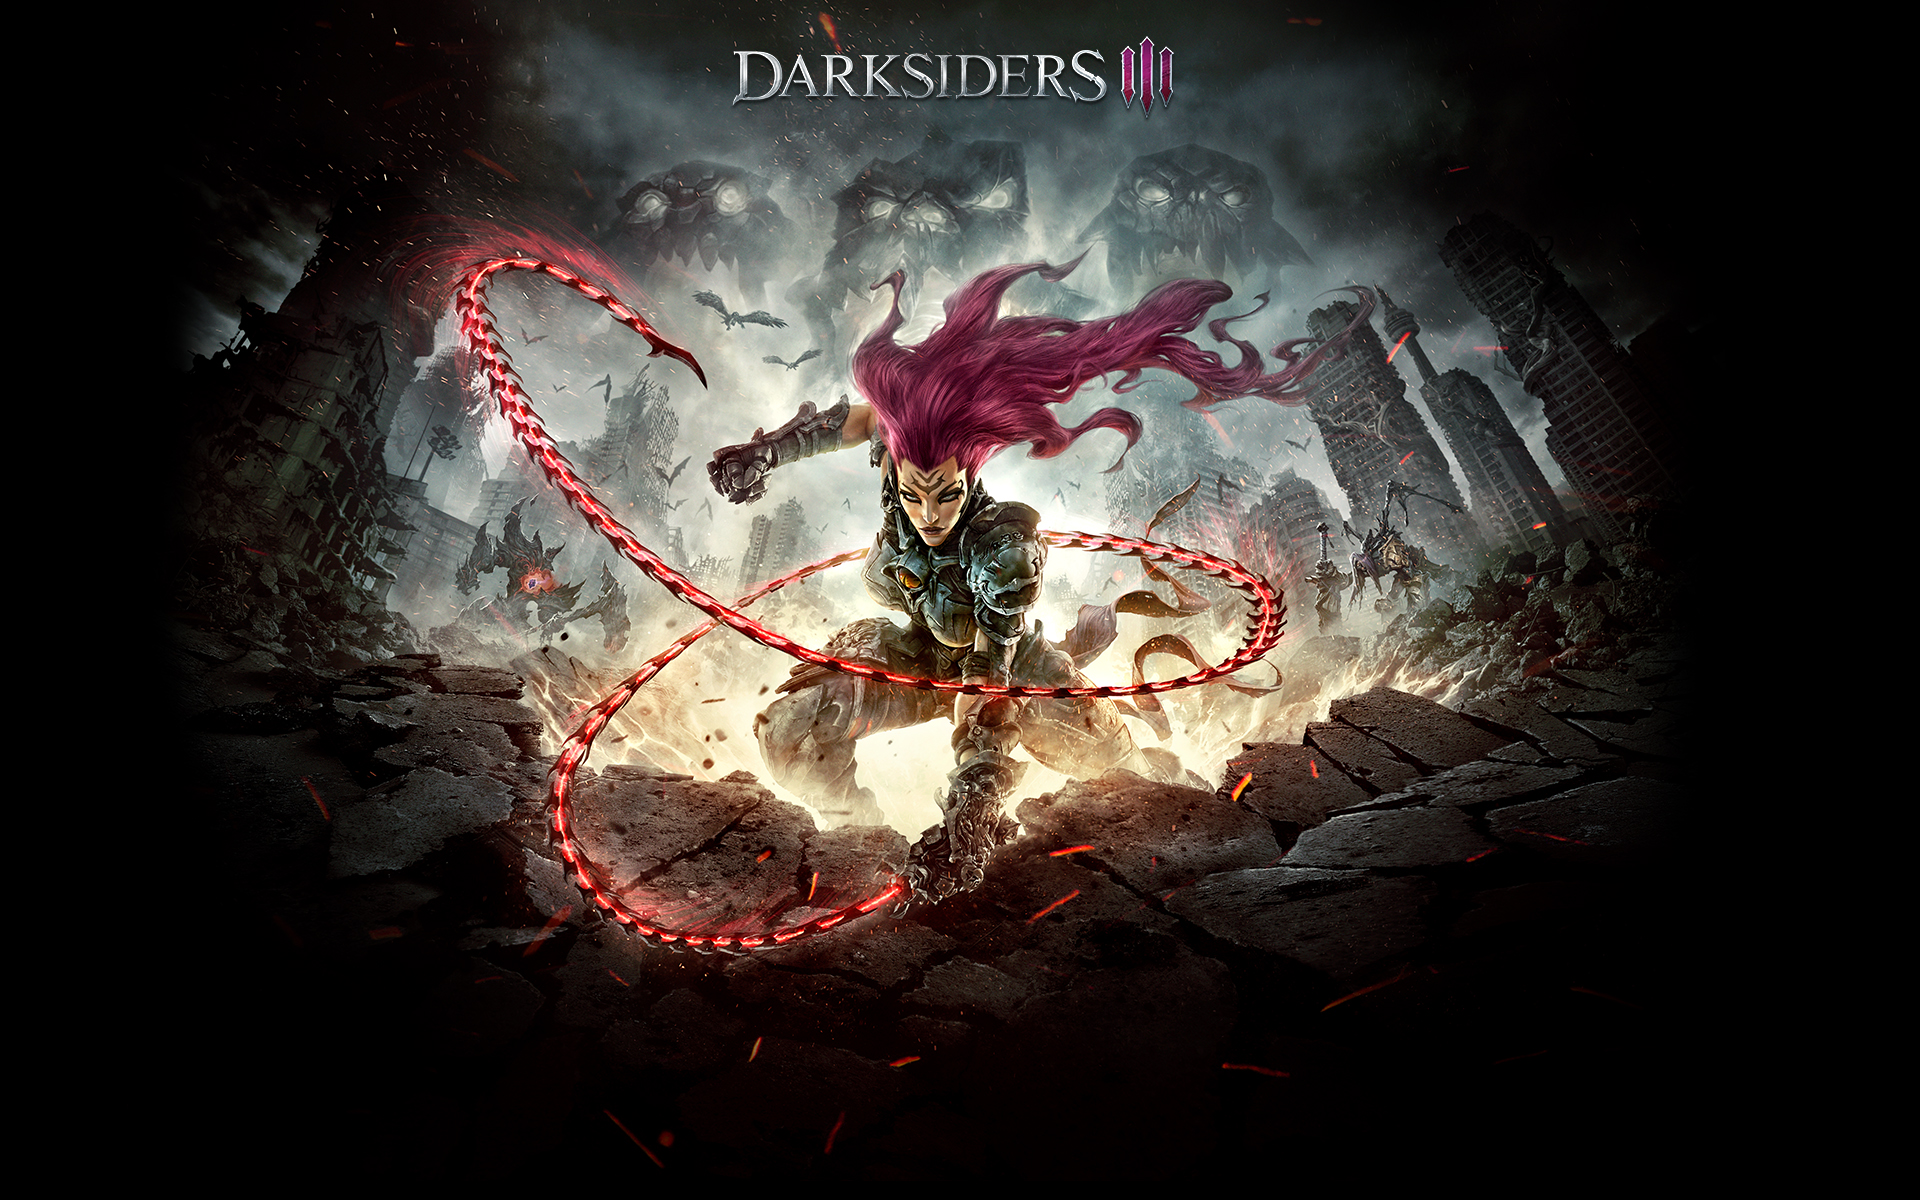 darksiders III za darmo